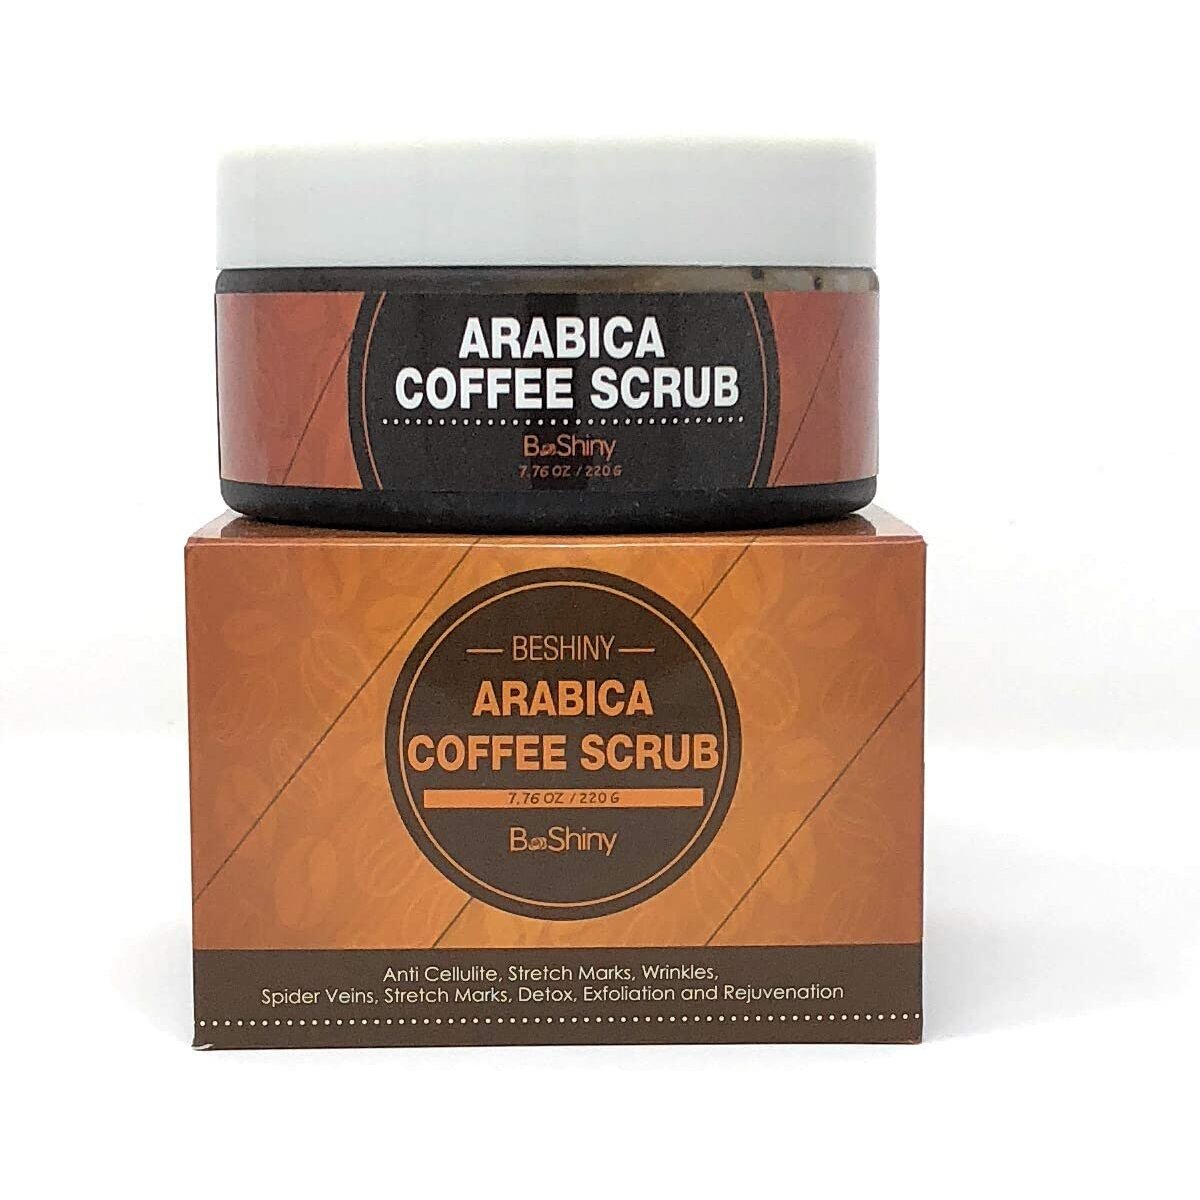 Exfoliating Arabica Coffee Scrub